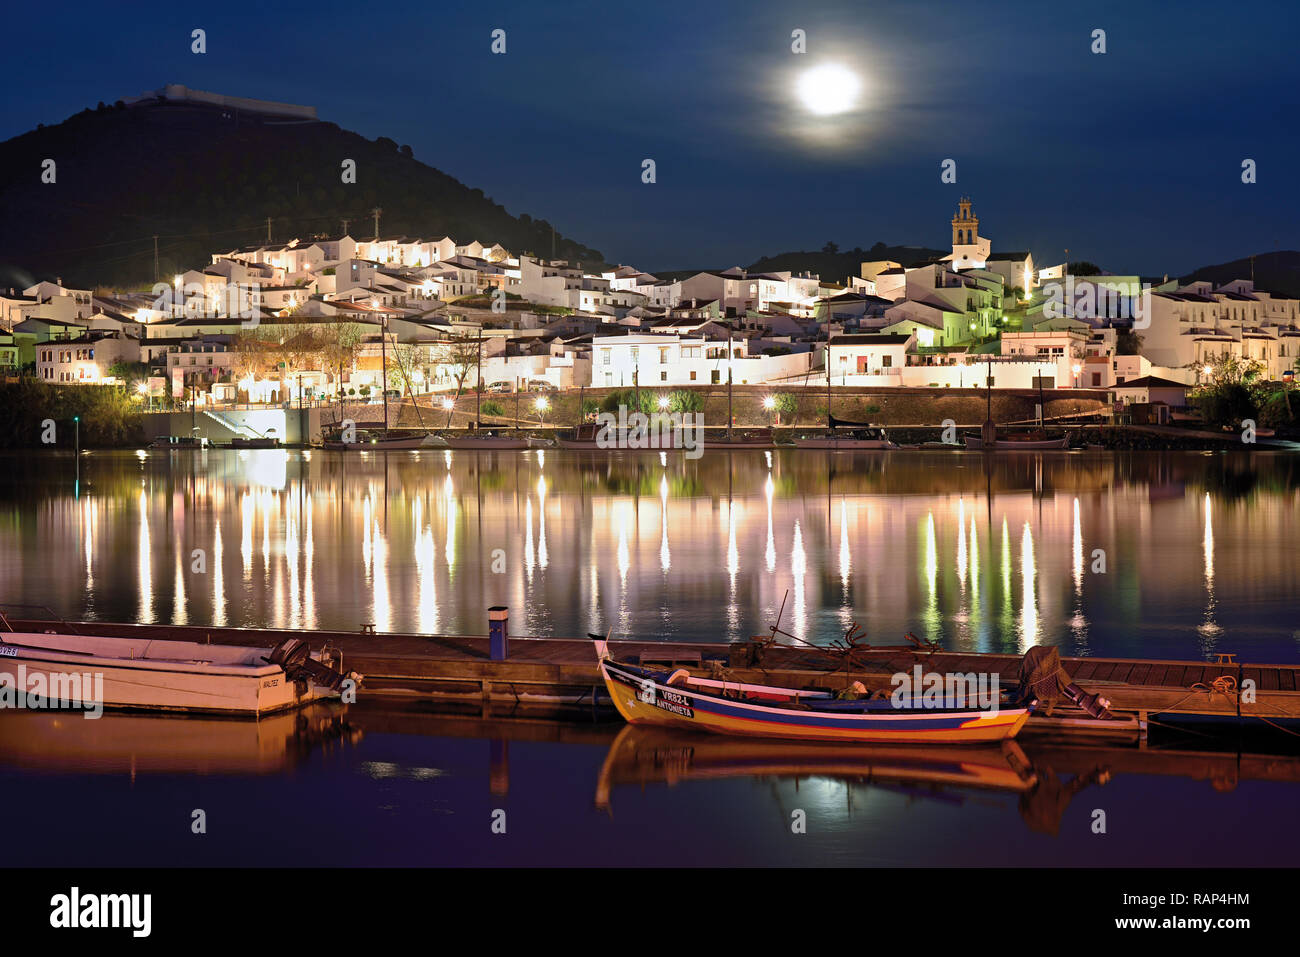 Blanc romantique riverside village avec moonlight et bateaux de pêche en bois à ancrage quay (vue depuis le Portugal à l'Espagne) Banque D'Images